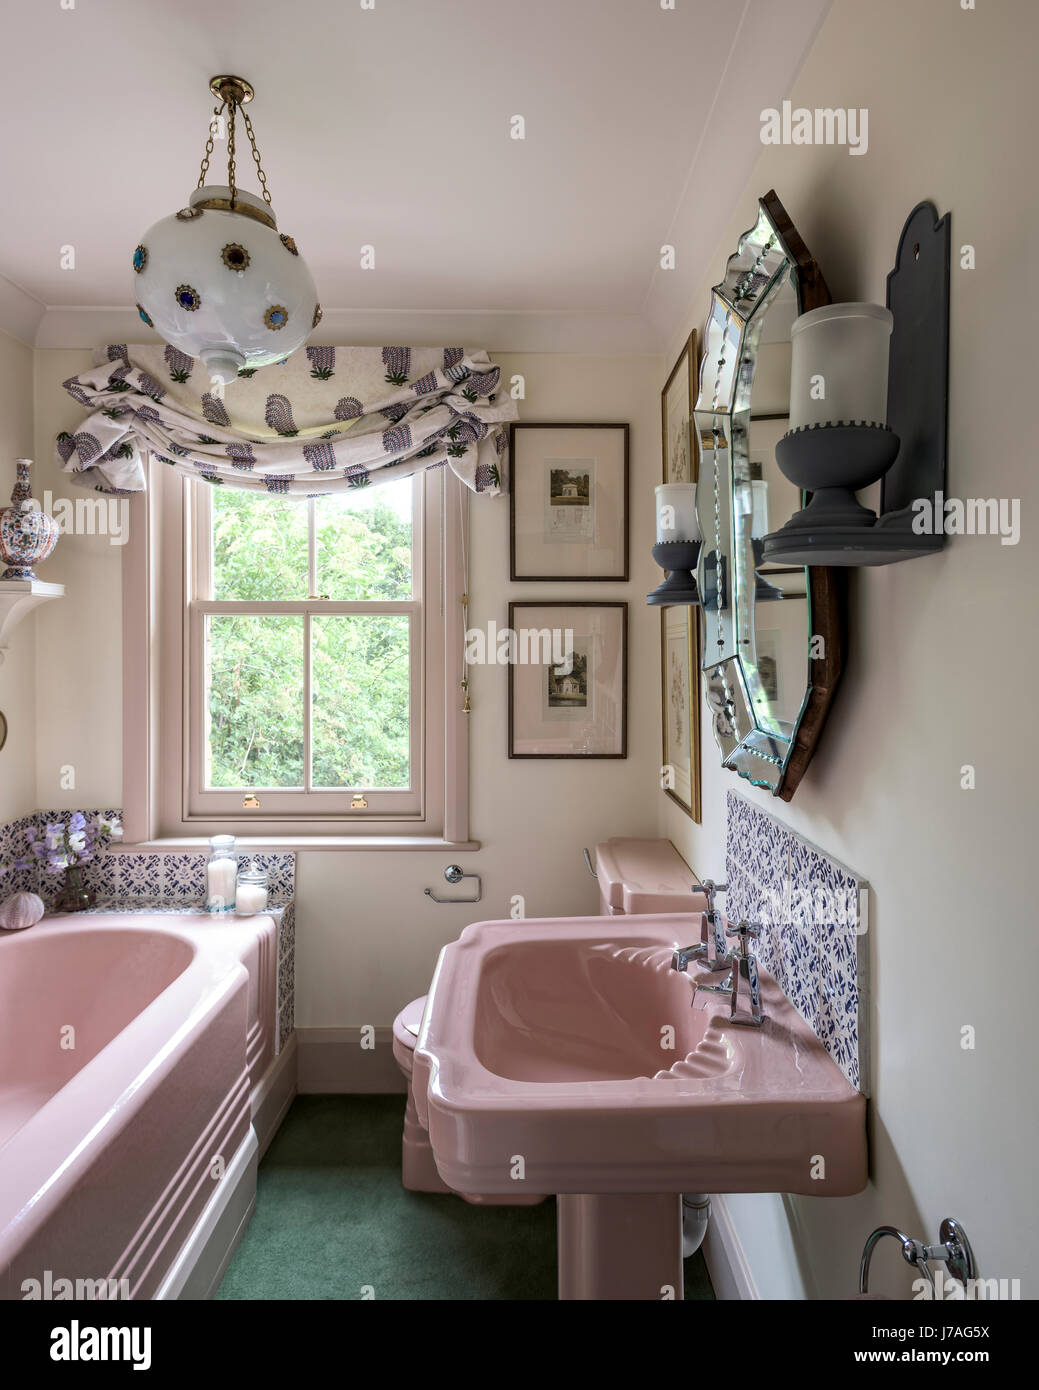 Baignoire en fonte émaillée rose et du bassin dans la salle de bains avec carreaux de terre et feu miroir doré orné Banque D'Images